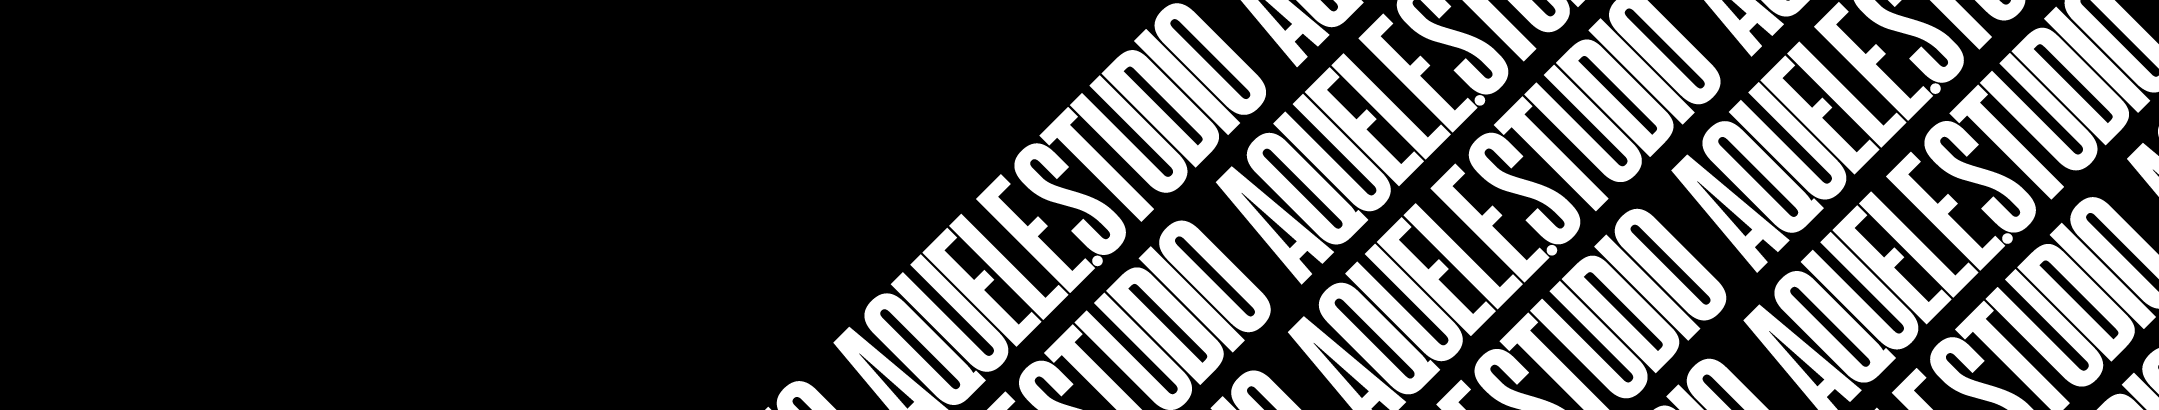 Aquele Studio's profile banner